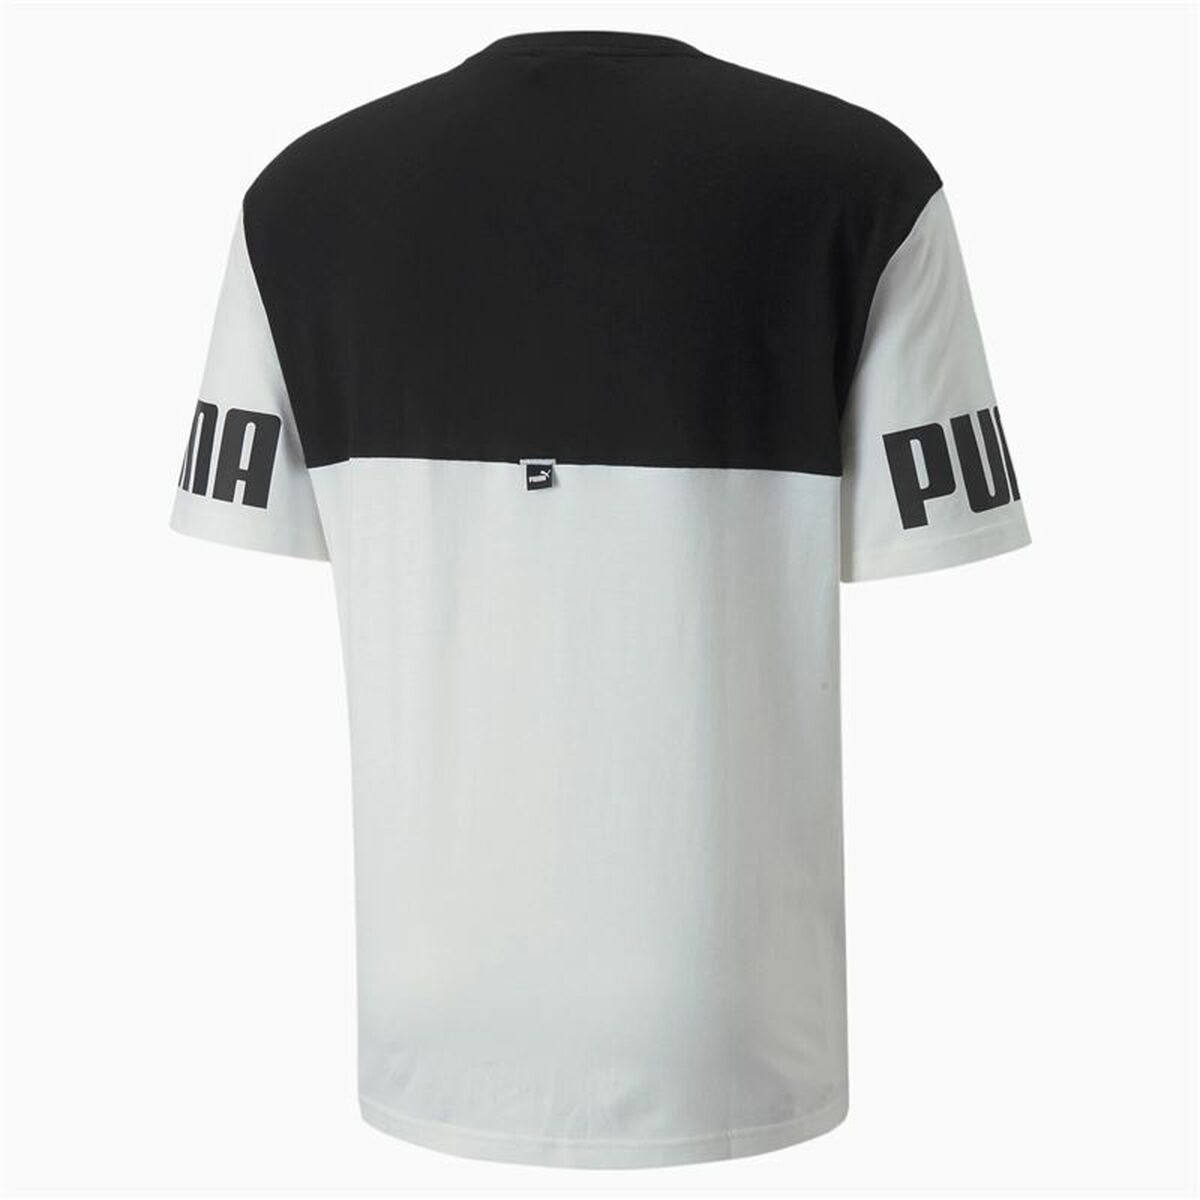 Kurzärmliges Sport T-Shirt Puma Power Colorblock Schwarz